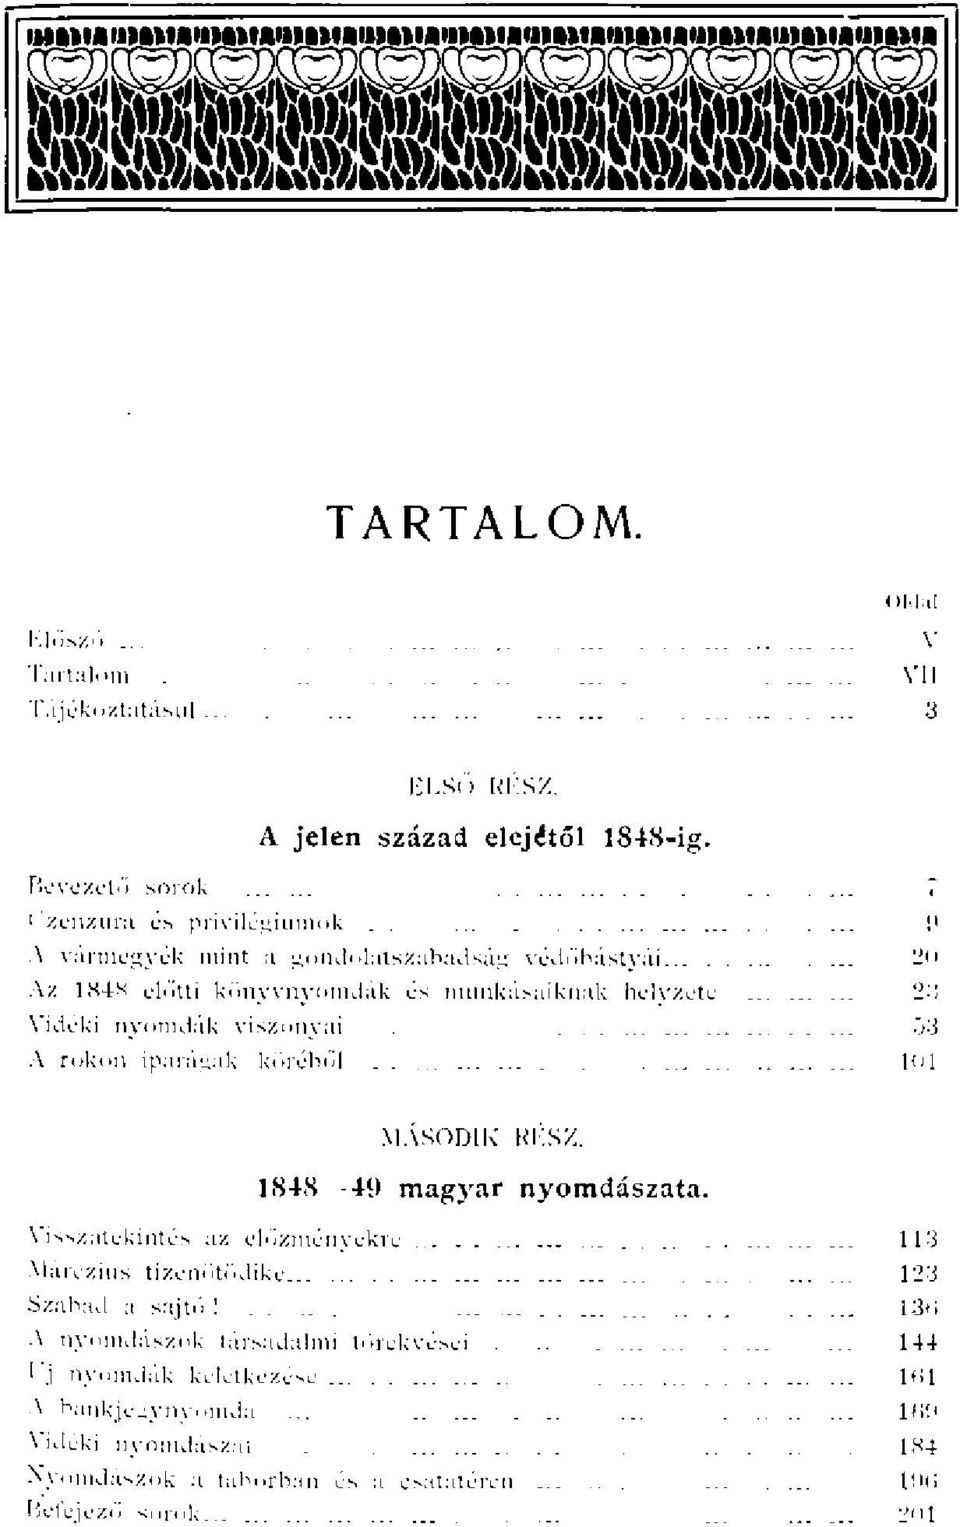 .. Az 1N4N előtti könyvnyomdák munkásaiknak helvzete Vidéki nyomdák viszonyai A rokon iparágak köréből.. MÁSODIK RKSX. 1848--49 magyar nyomdászata.